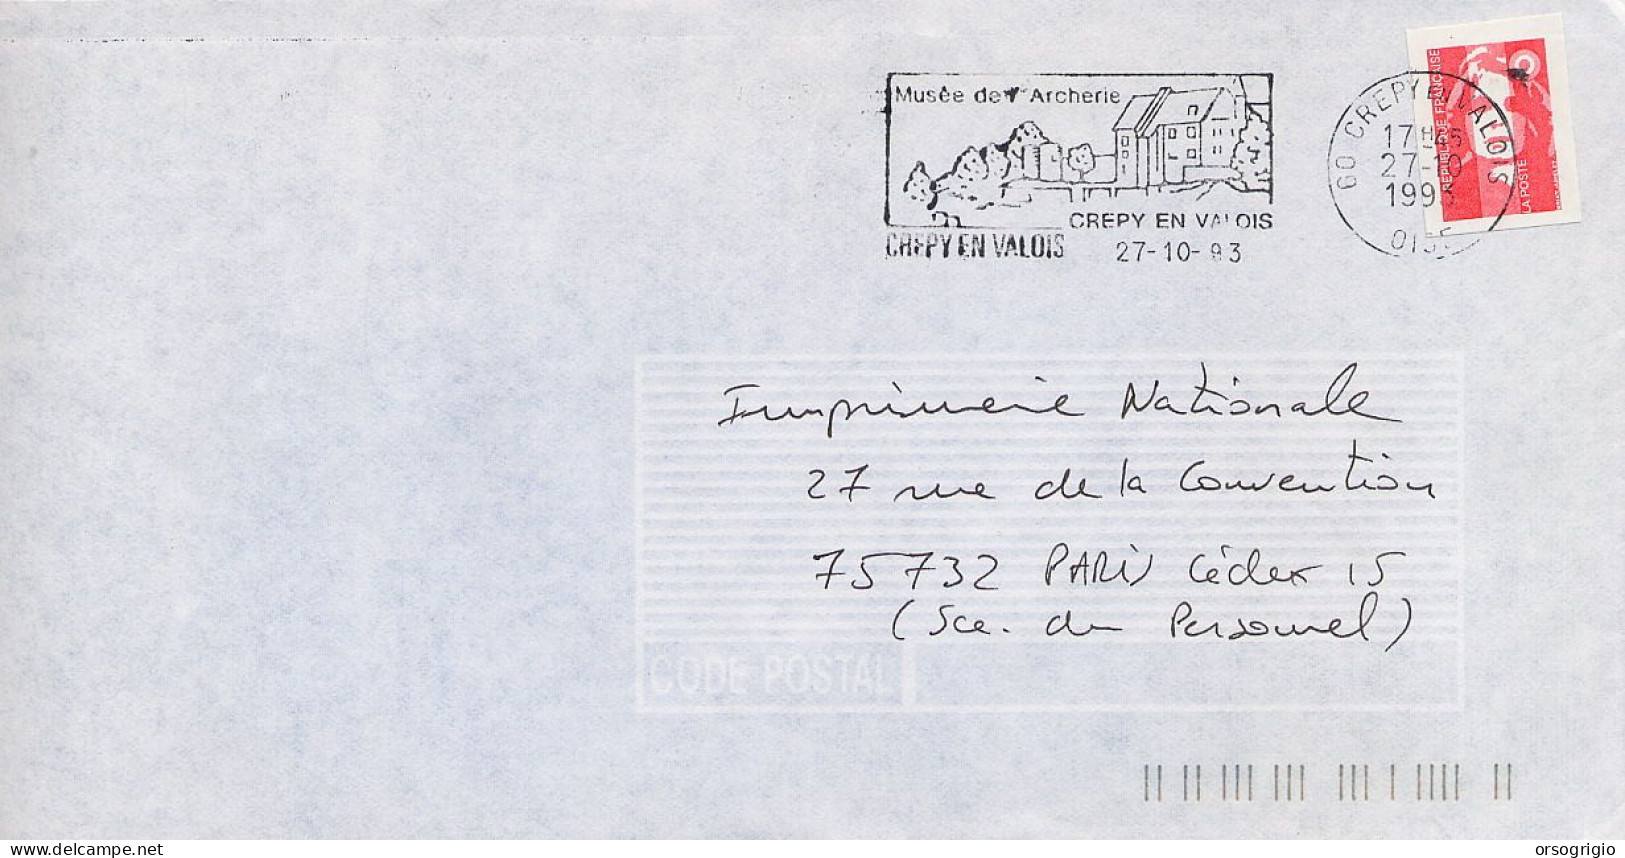 FRANCIA FRANCE -  CREPY EN VALOIS - MUSEE DE L'ARCHERIE  -  ARCO - Tir à L'Arc